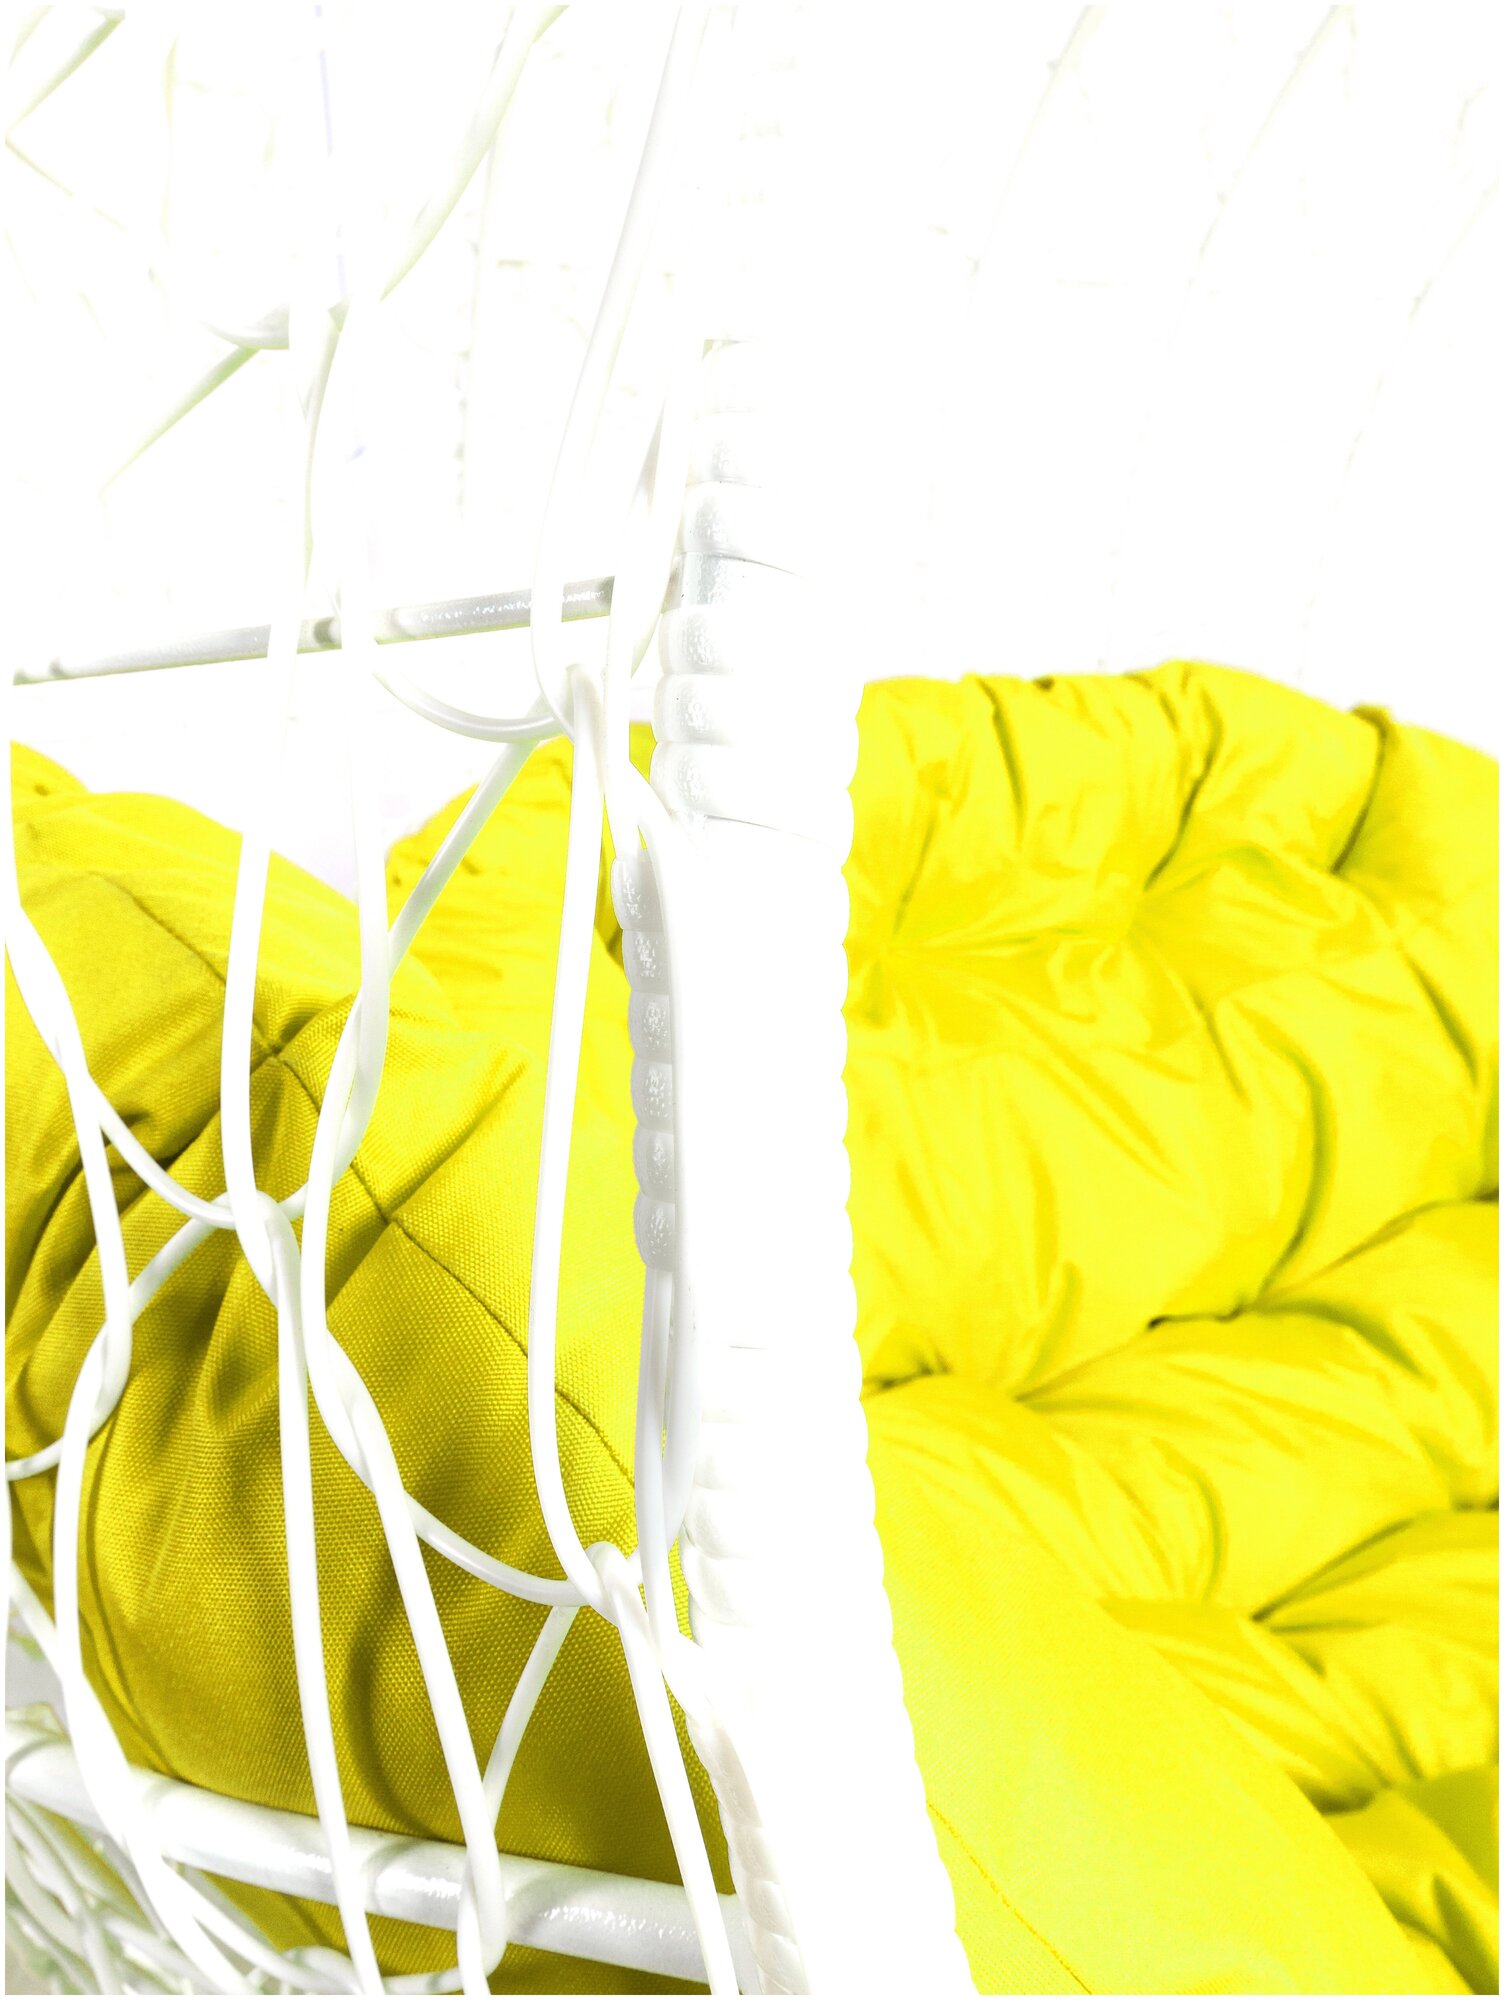 Диван белый M-Group Улей на ножках 11220111 желтая подушка - фотография № 11